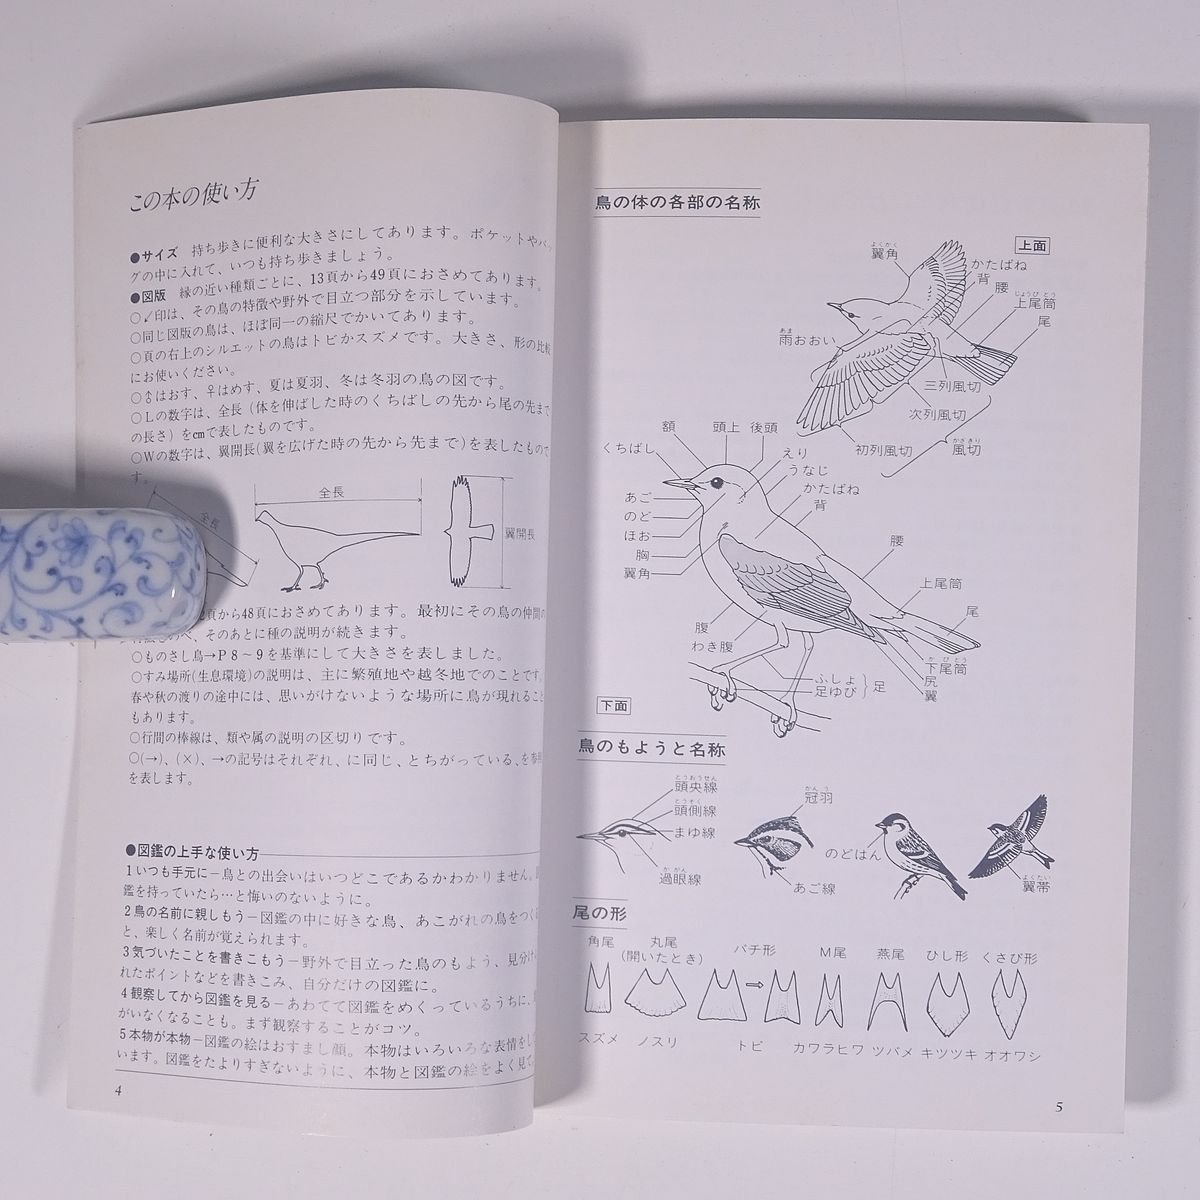  гора .. птица полевые наблюдения рука книжка 1 Япония дикая птица. .1986 монография птица наблюдение иллюстрации 